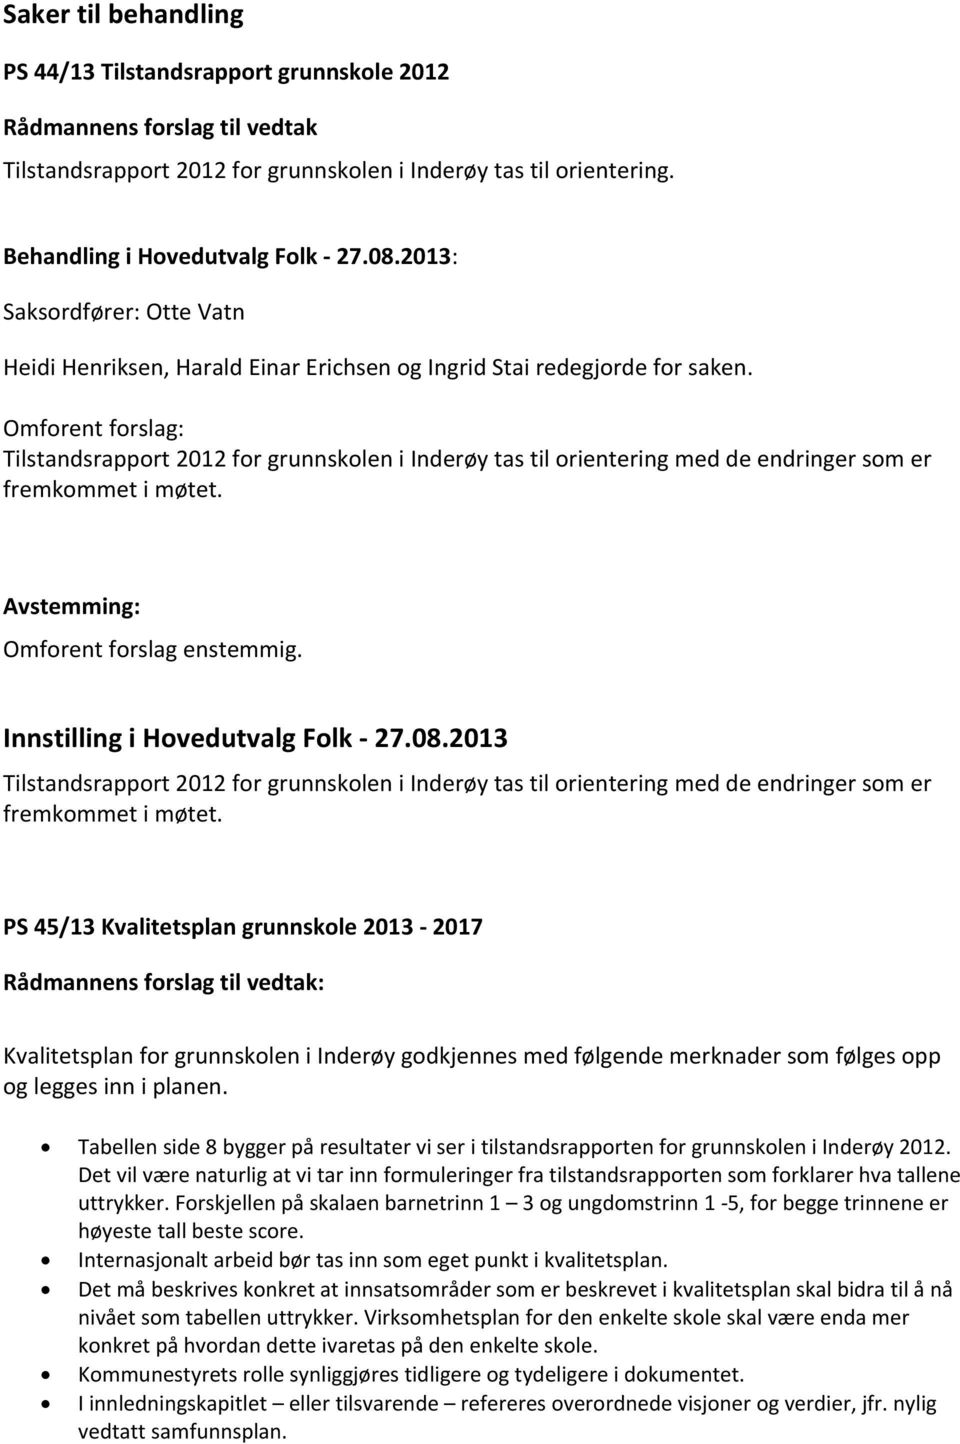 Omforent forslag: Tilstandsrapport 2012 for grunnskolen i Inderøy tas til orientering med de endringer som er fremkommet i møtet. Omforent forslag enstemmig. Innstilling i Hovedutvalg Folk - 27.08.